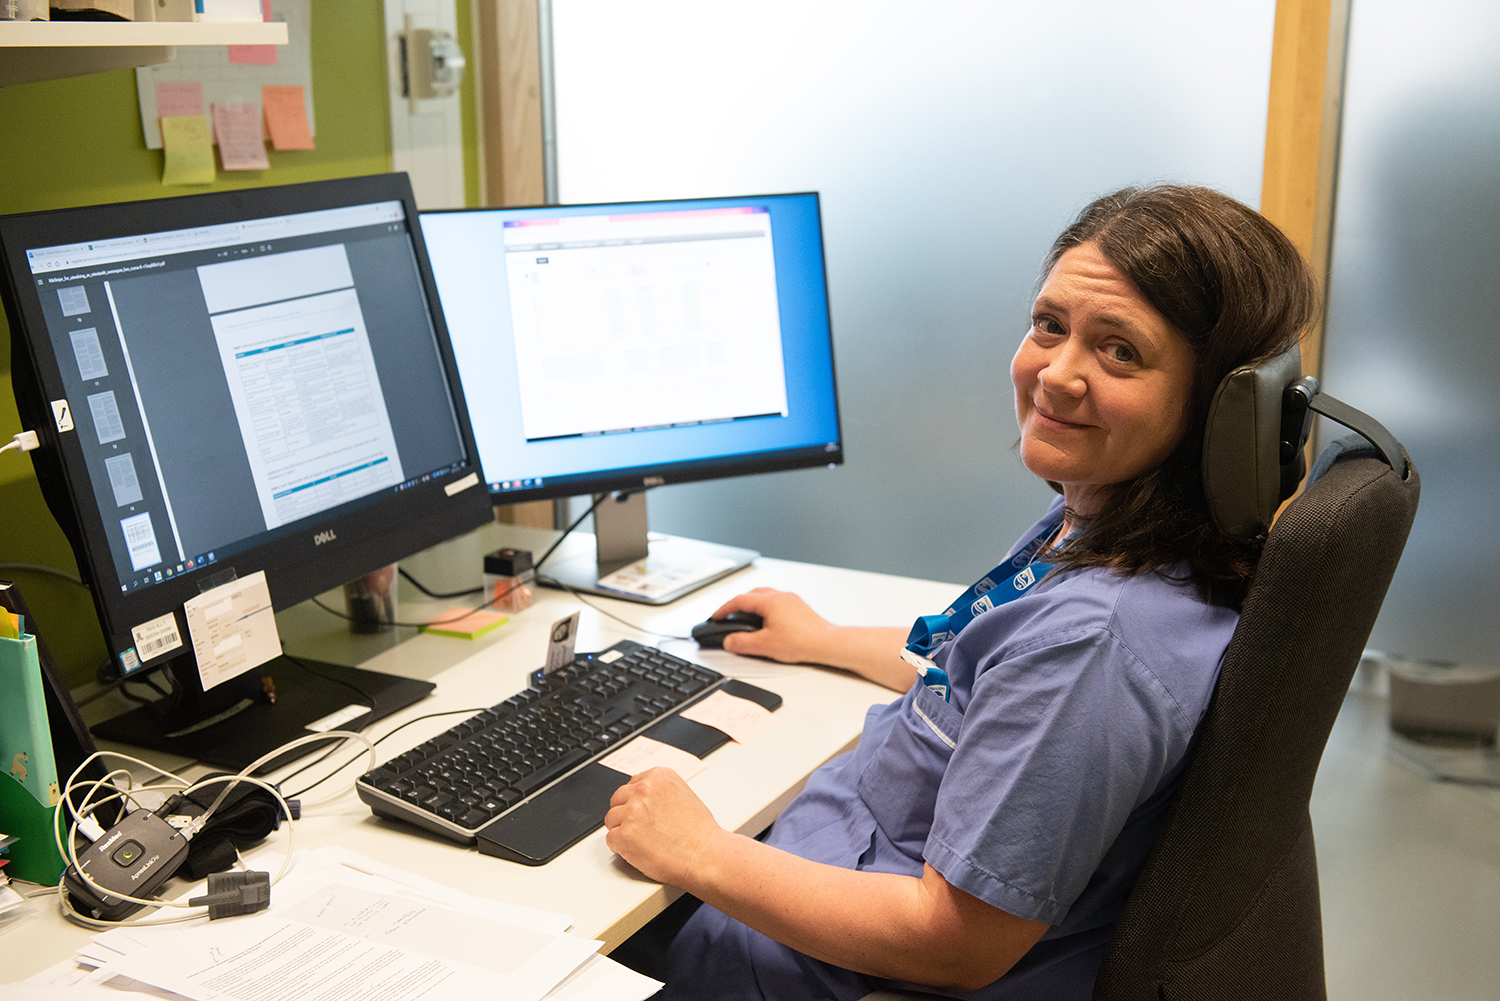 Forskningssjuksköterska sitter vid skrivbordet med datorskärmar och ler mot kameran